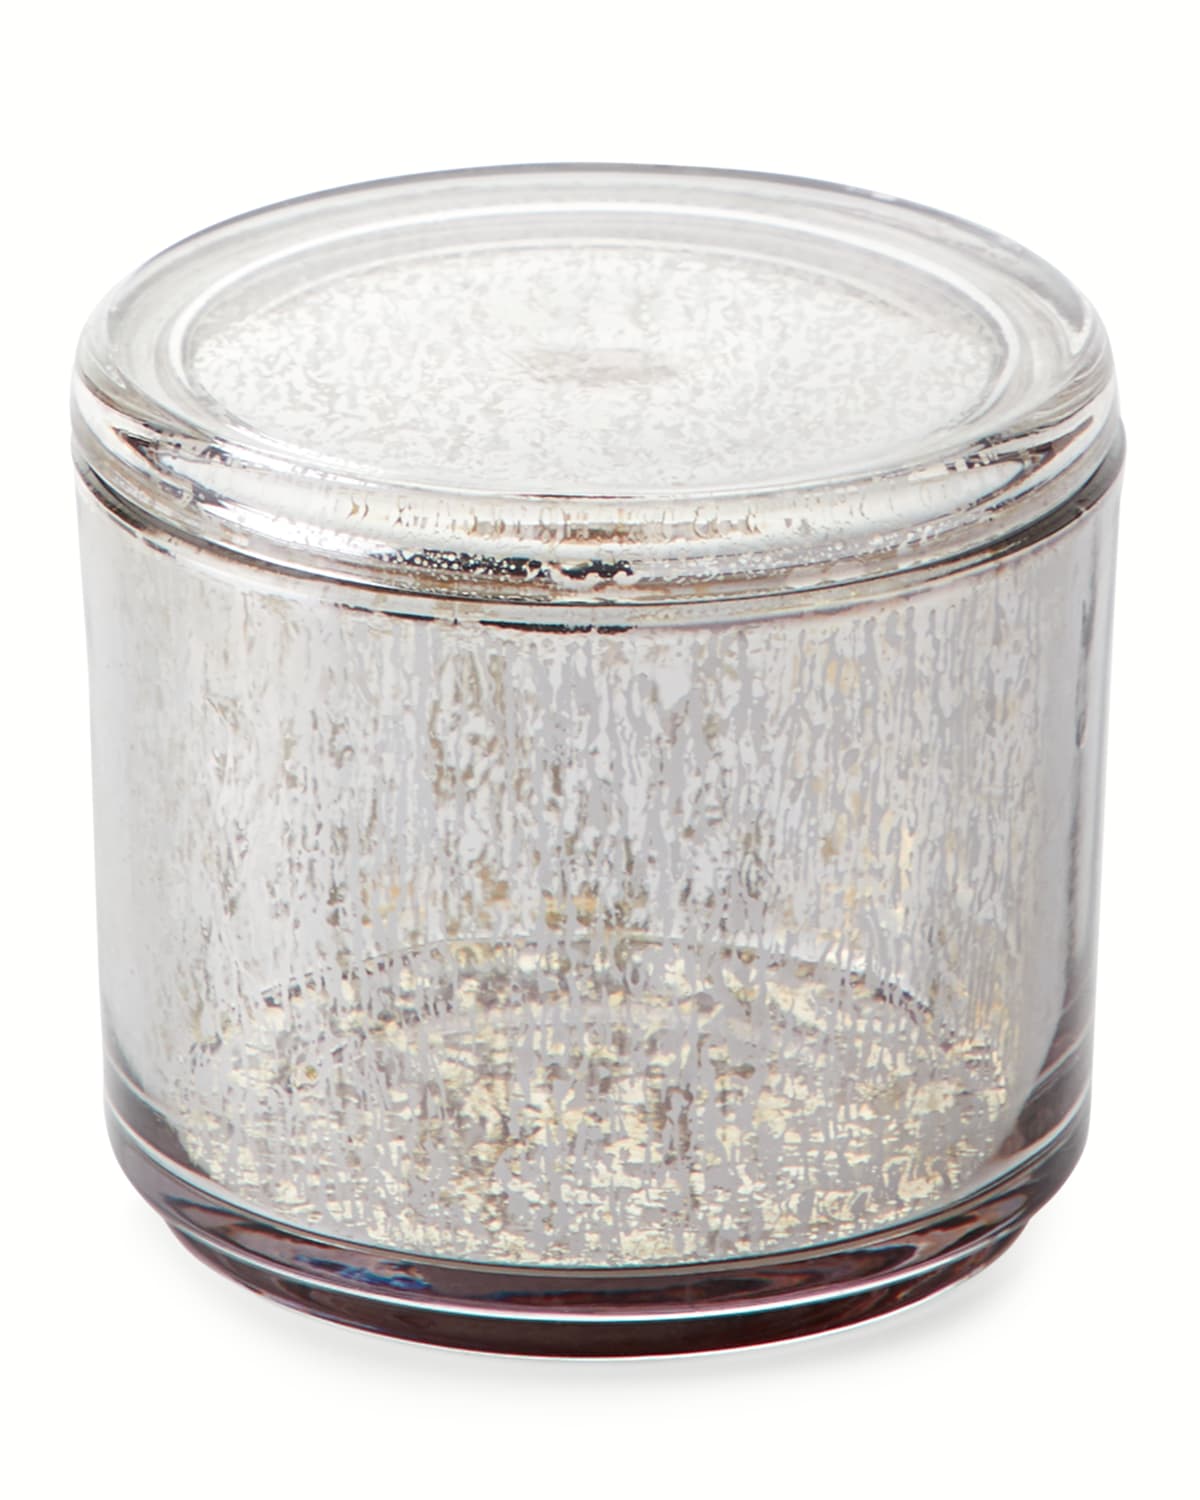 Kassatex Versailles Cotton Jar In Gray Metallic